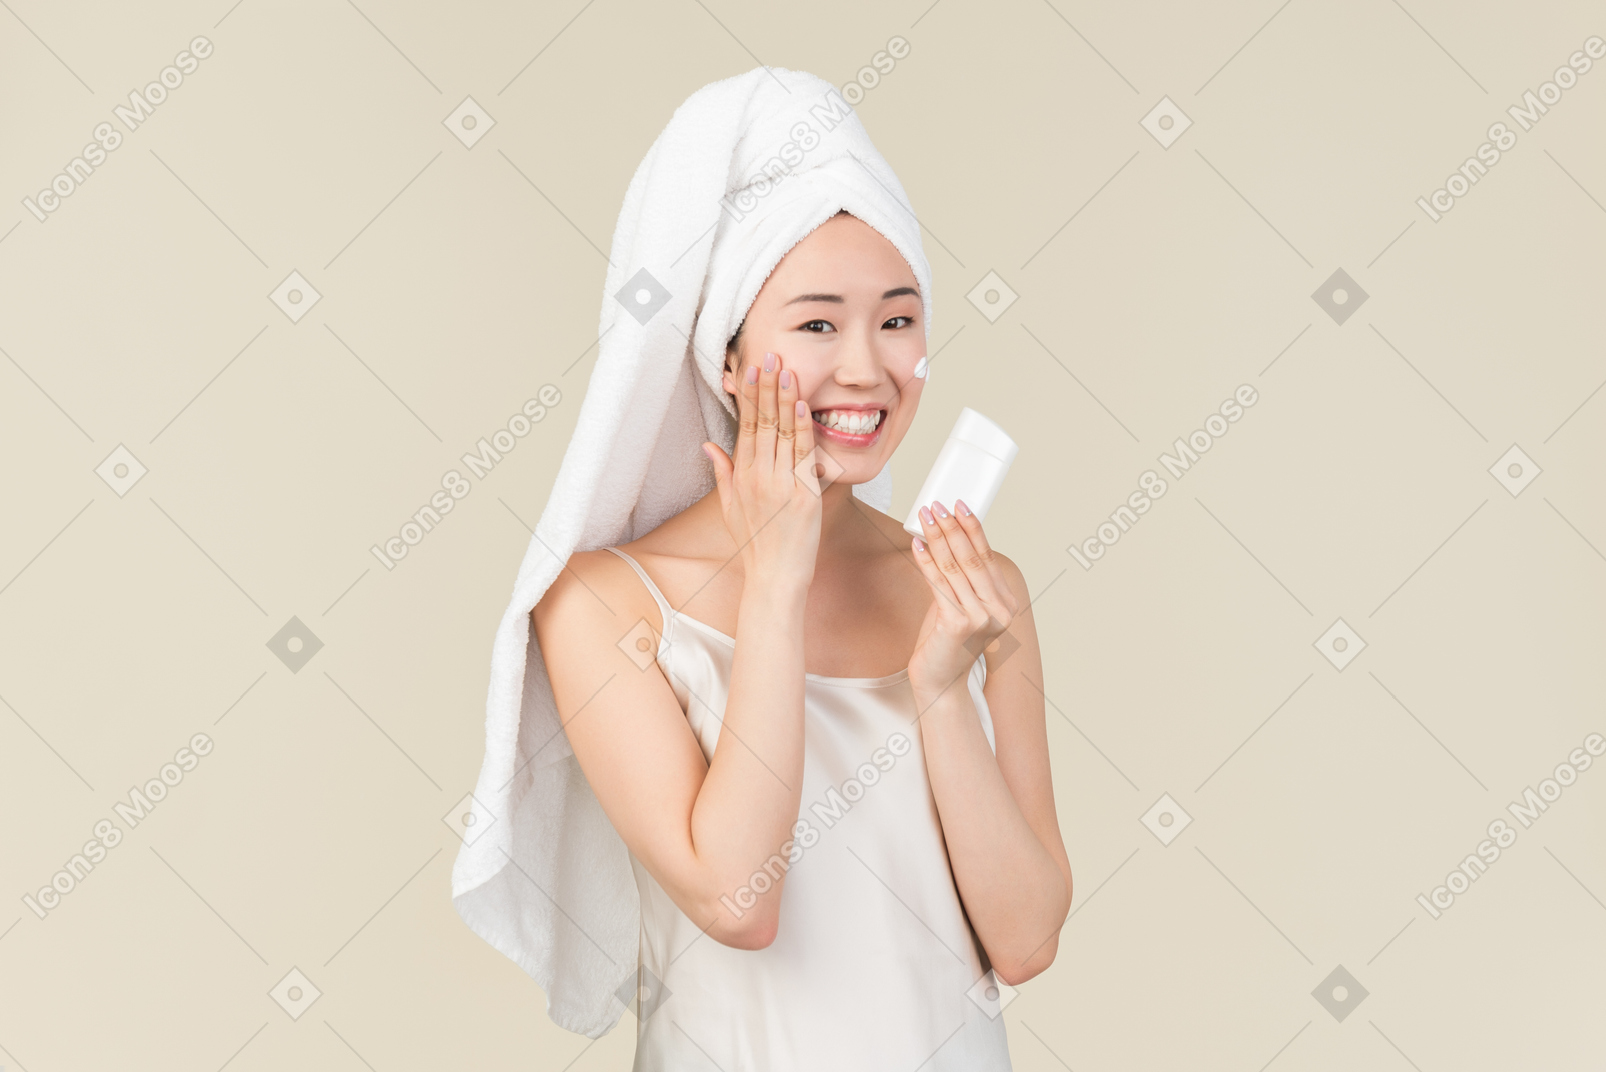 Lächelndes asiatisches mädchen mit dem haar eingewickelt im tuch, das creme aufträgt